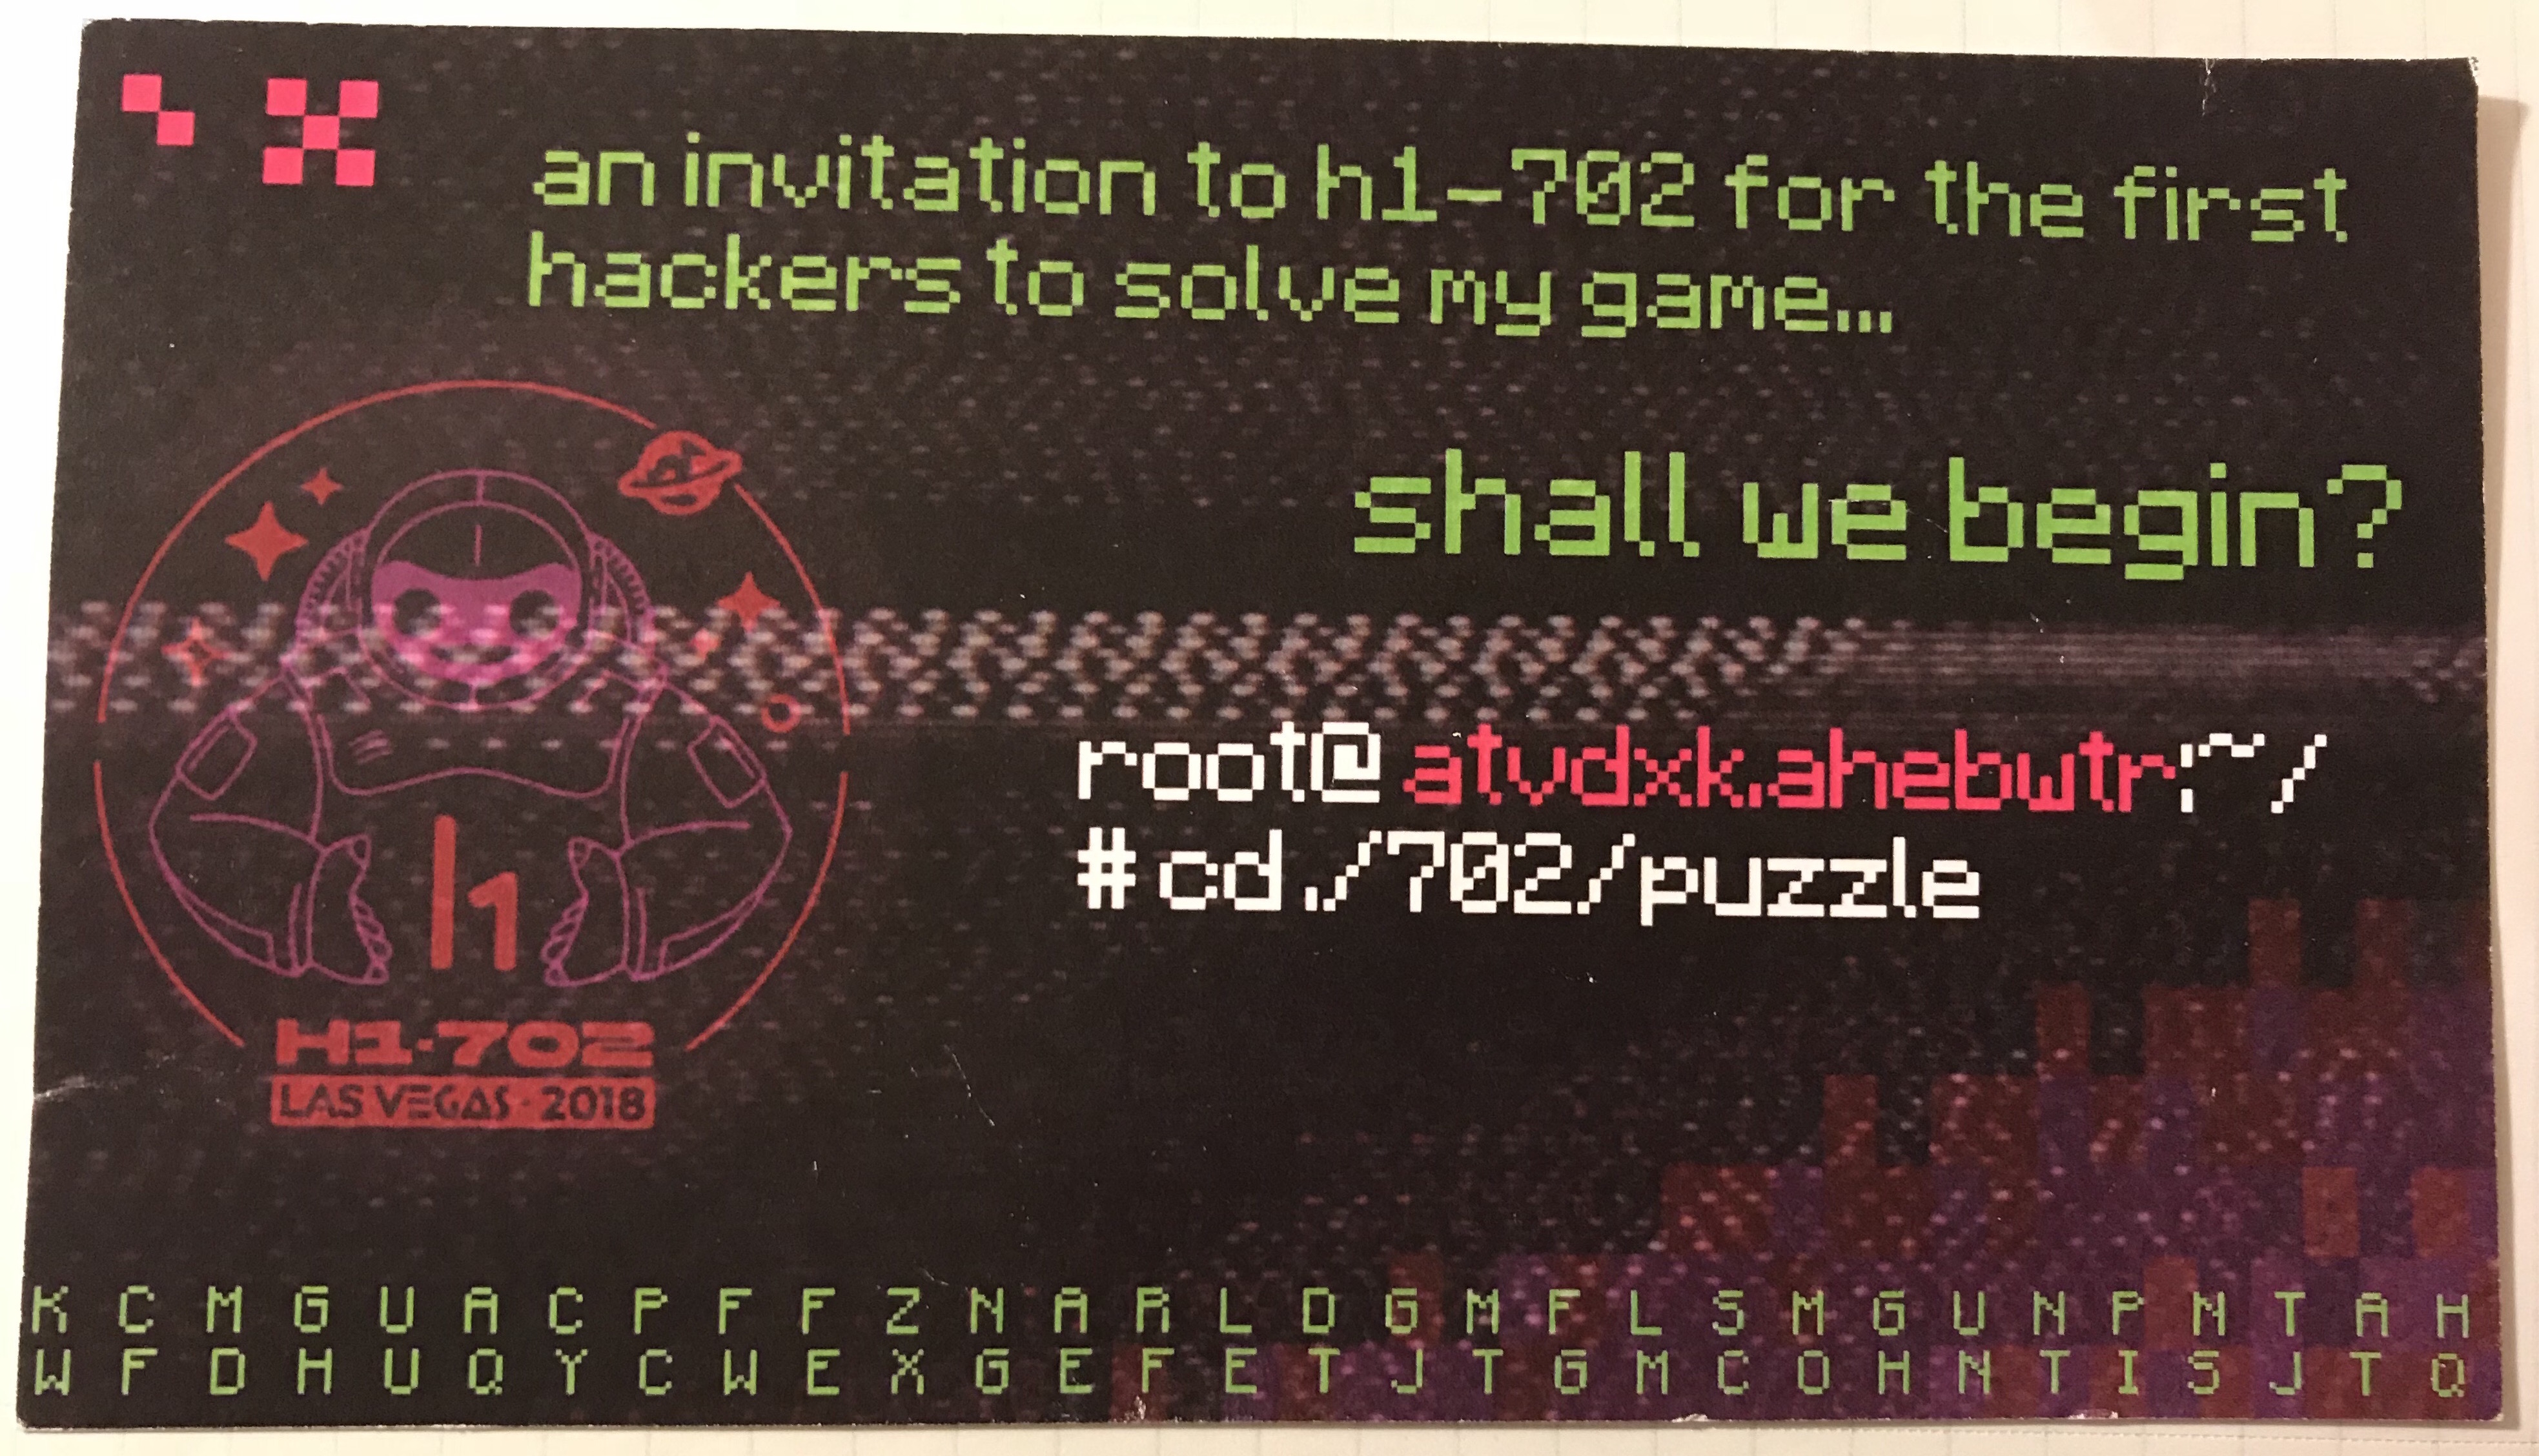 HackerOne - h1702 Las Vegas DEFCON #HackerHoliday CTF Card